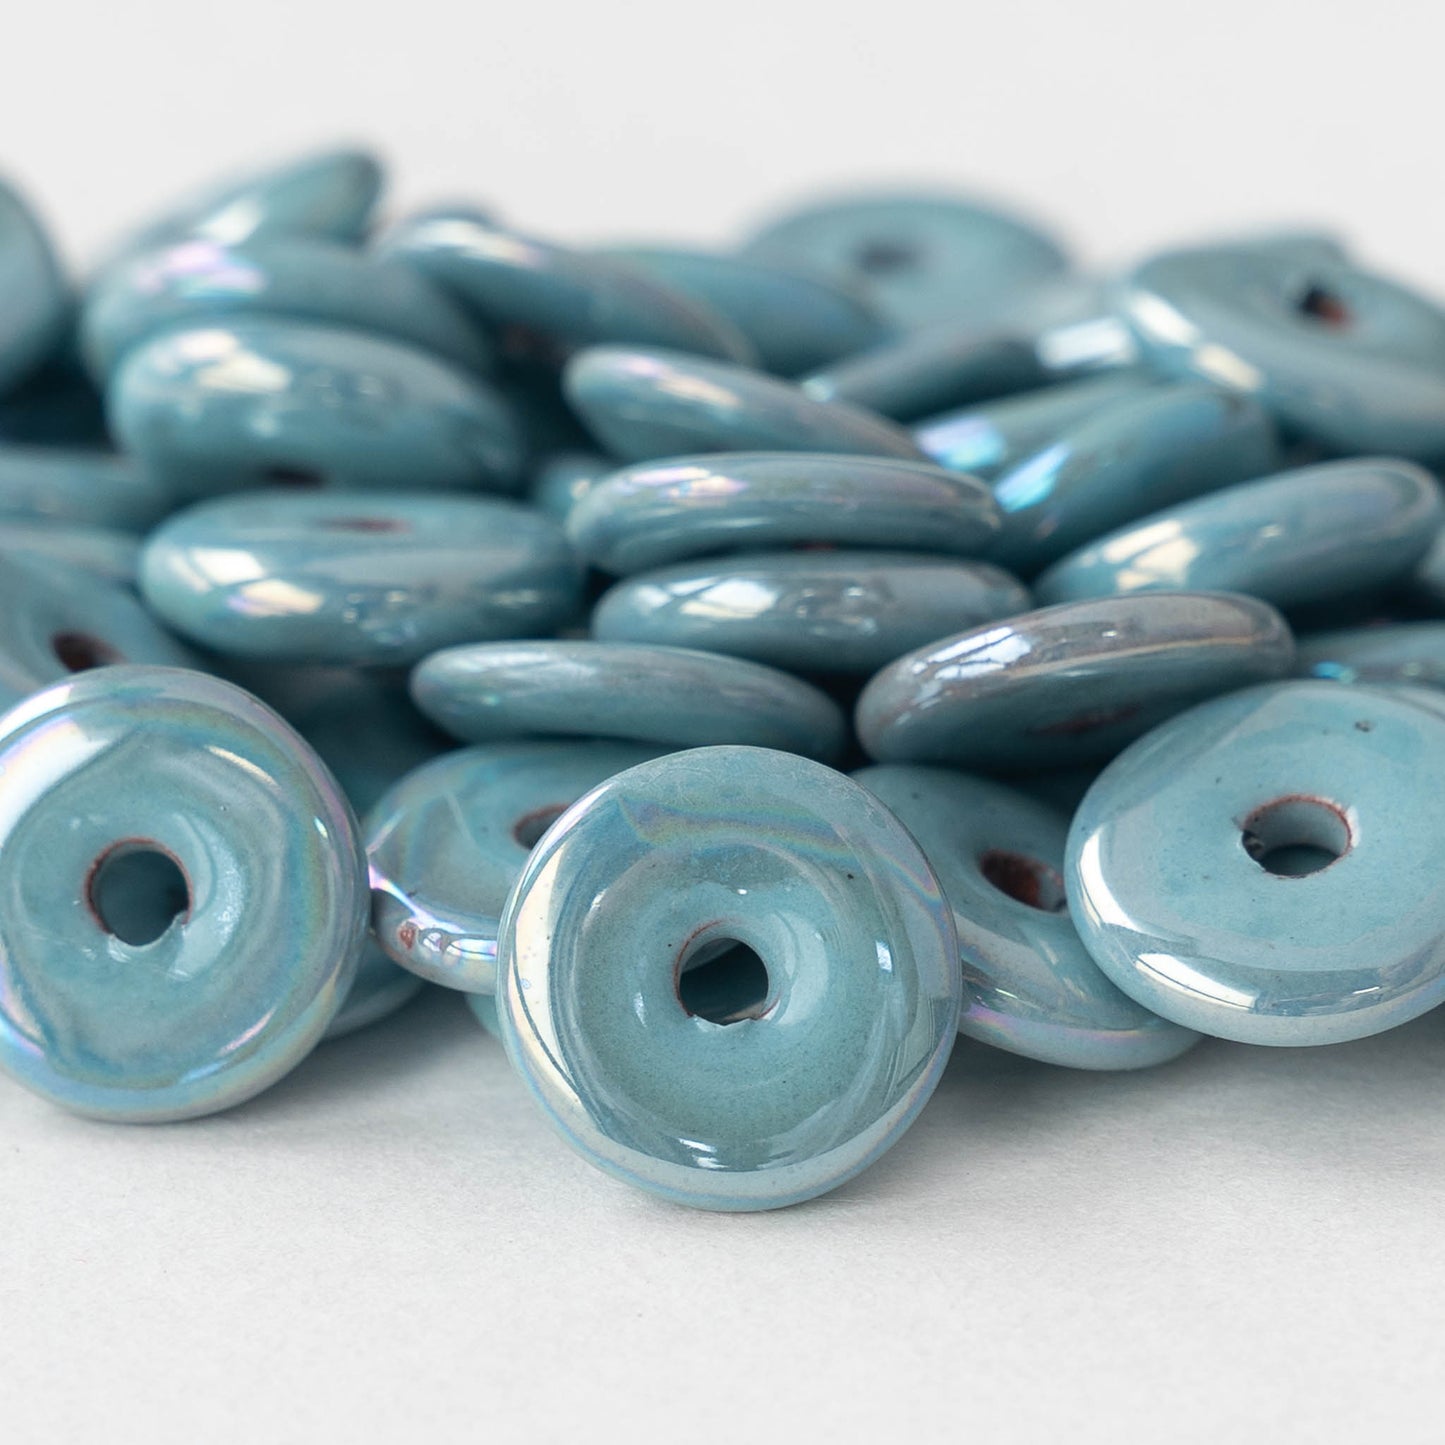 13mm Glazed Ceramic Disk Beads - Iridescent Light Blue - 6 or 18 beads